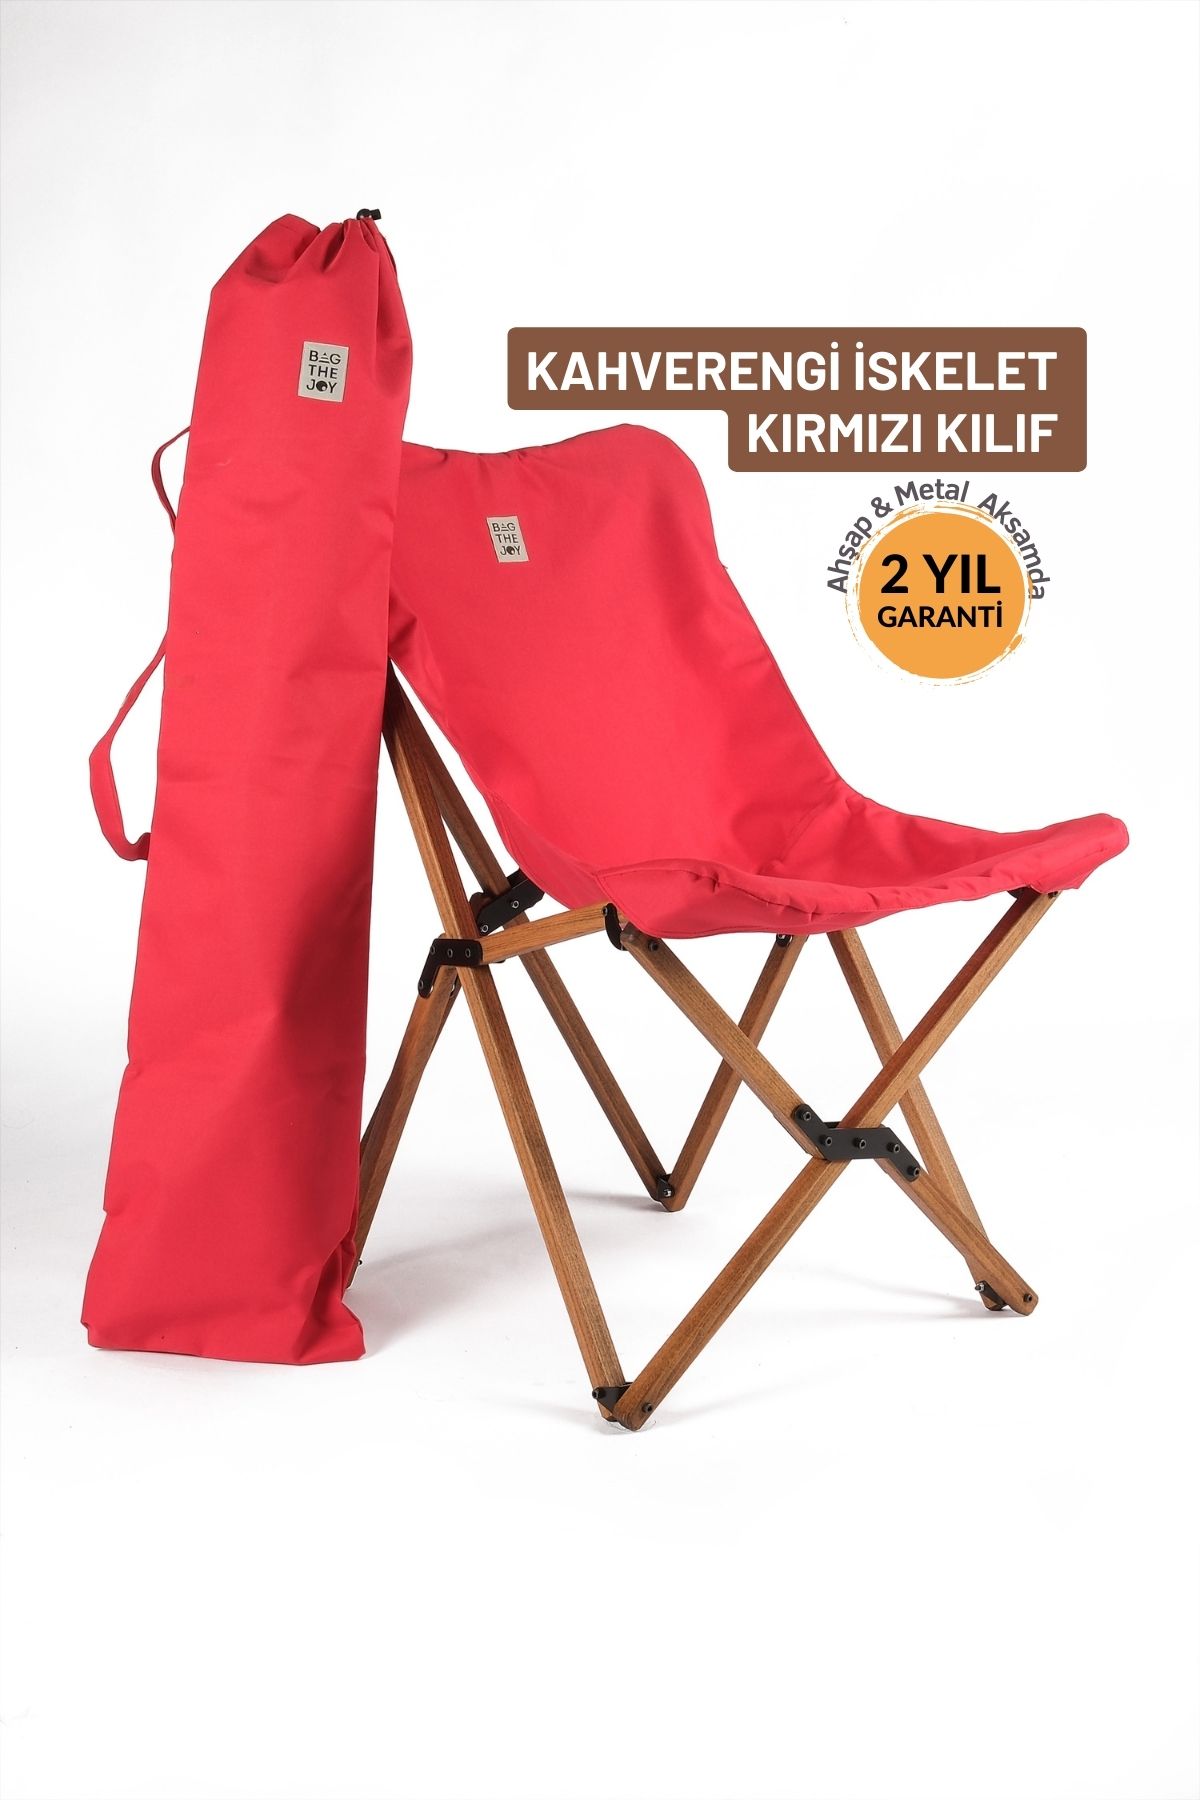 Bag The Joy Ahşap Katlanır Kamp & Bahçe Sandalyesi – Kahverengi Iskelet - Kırmızı Kılıf